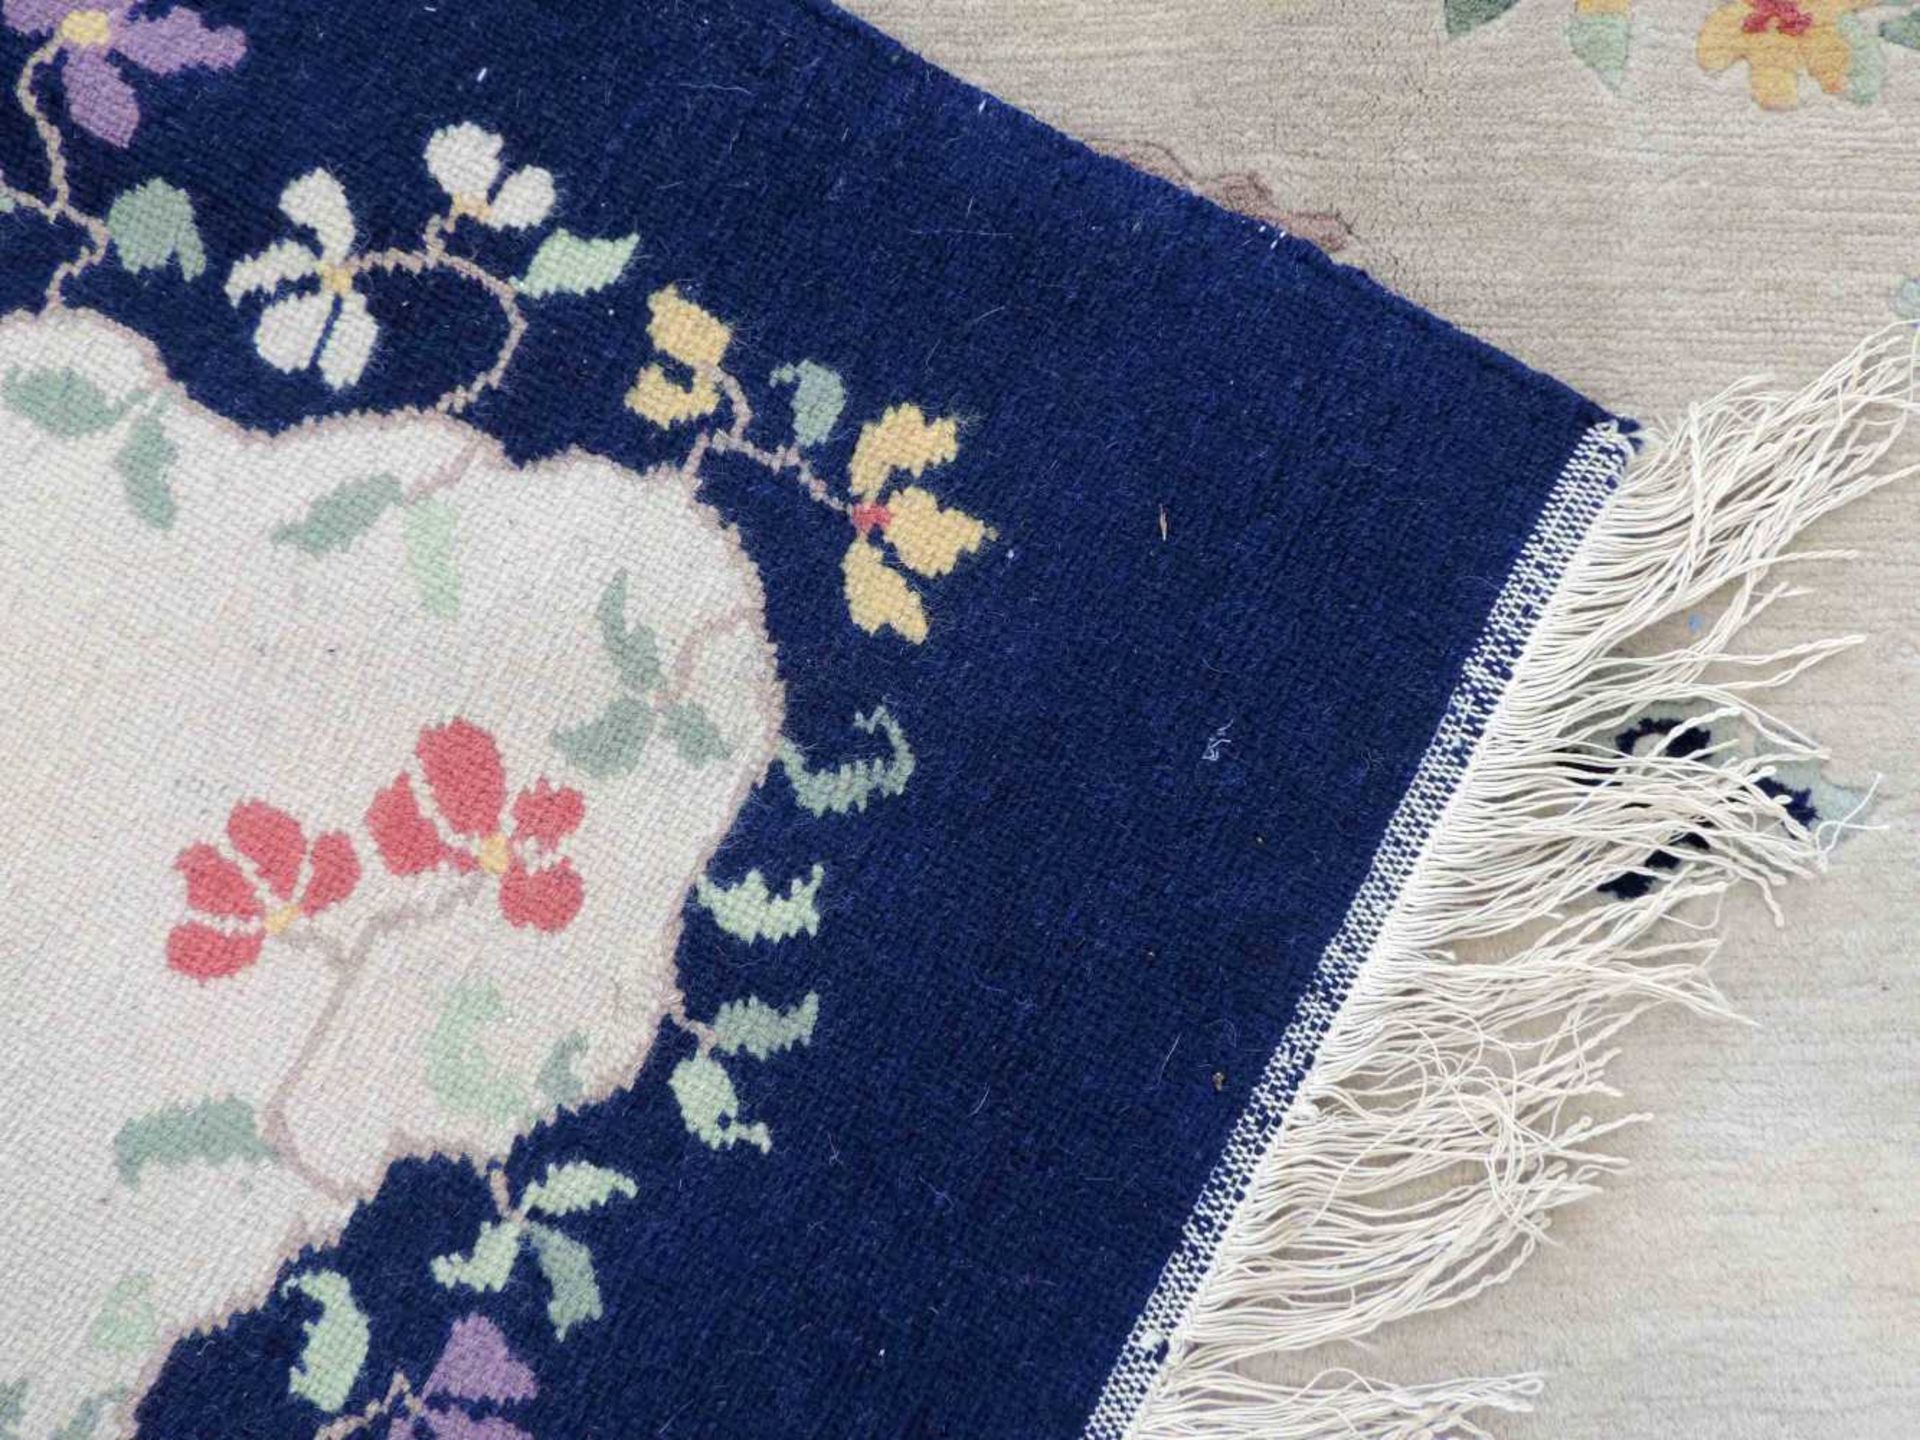 Blütenteppich China. 245 cm x 167 cm. Handgeknüpft, Wolle auf Baumwolle. Blossoms carpet China. - Bild 4 aus 12